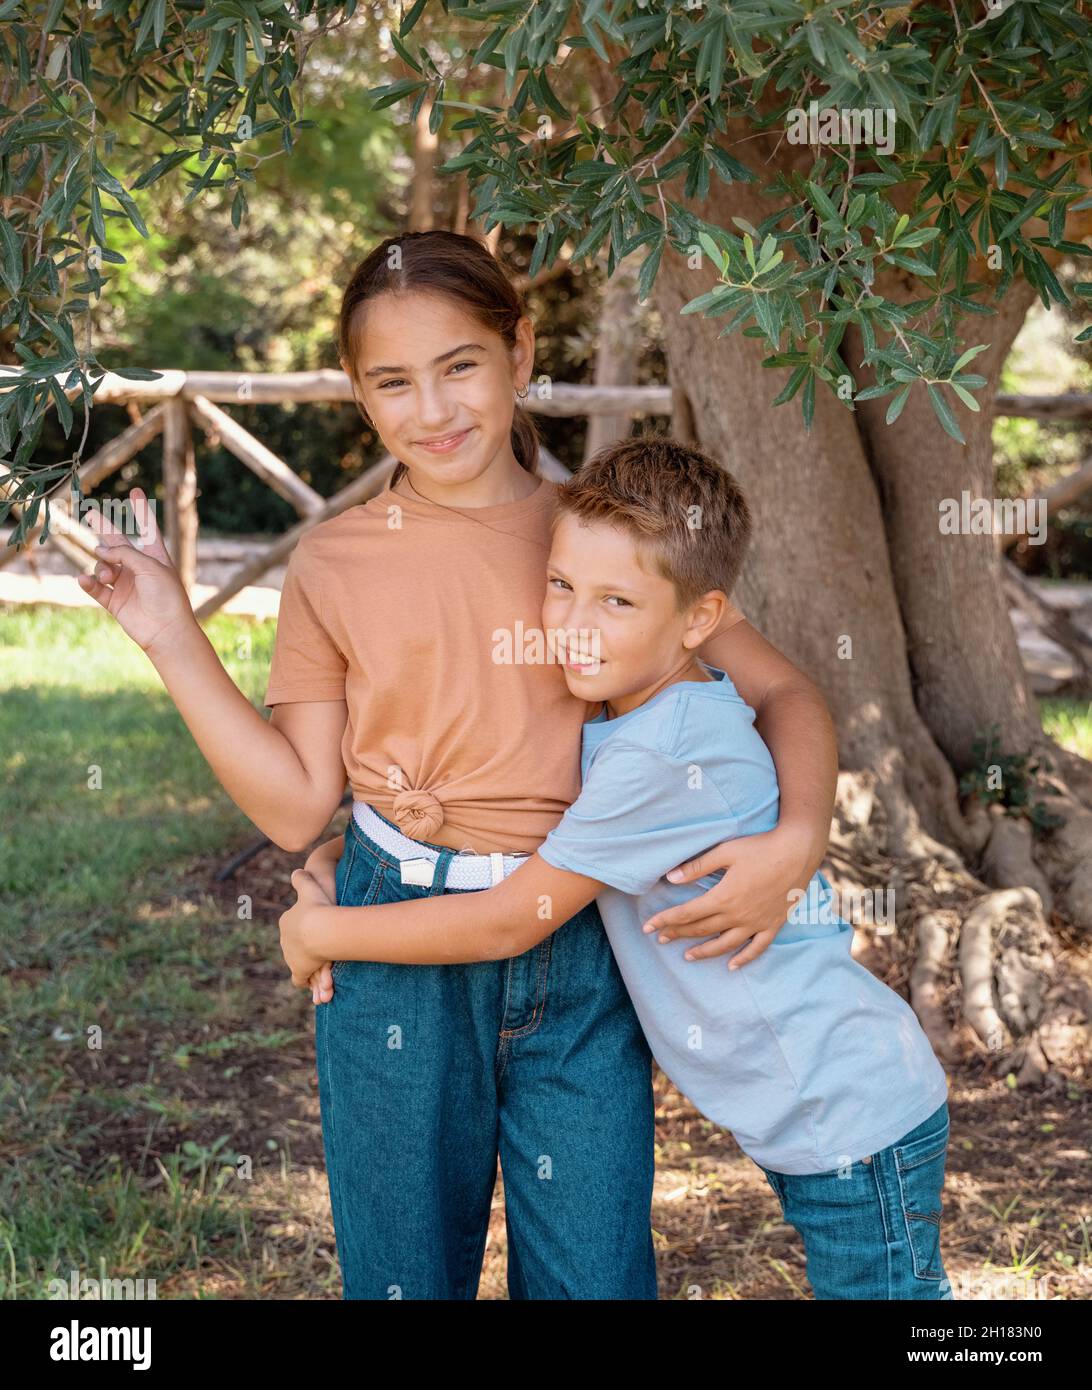 Fröhlicher Bruder und Schwester umarmen sich gegenseitig und zeigen V gest im Freien. Nettes Kind Mädchen und Junge Spaß in einem Park im Sommer. T-Shirt-Modell Stockfoto